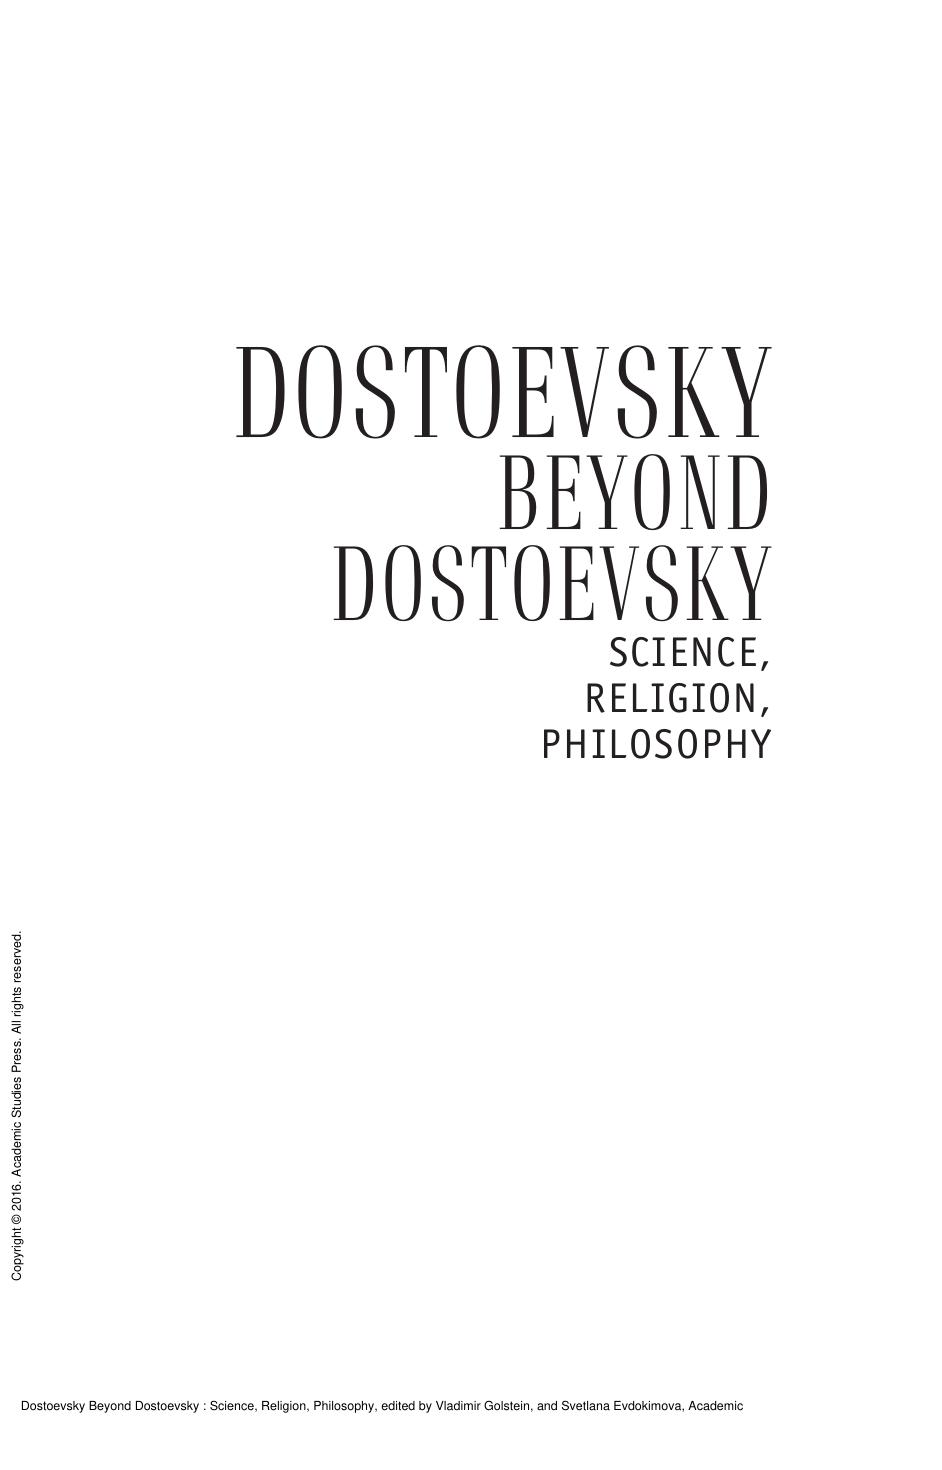 Dostoevsky Beyond Dostoevsky : Science, Religion, Philosophy by Vladimir Golstein; Svetlana Evdokimova